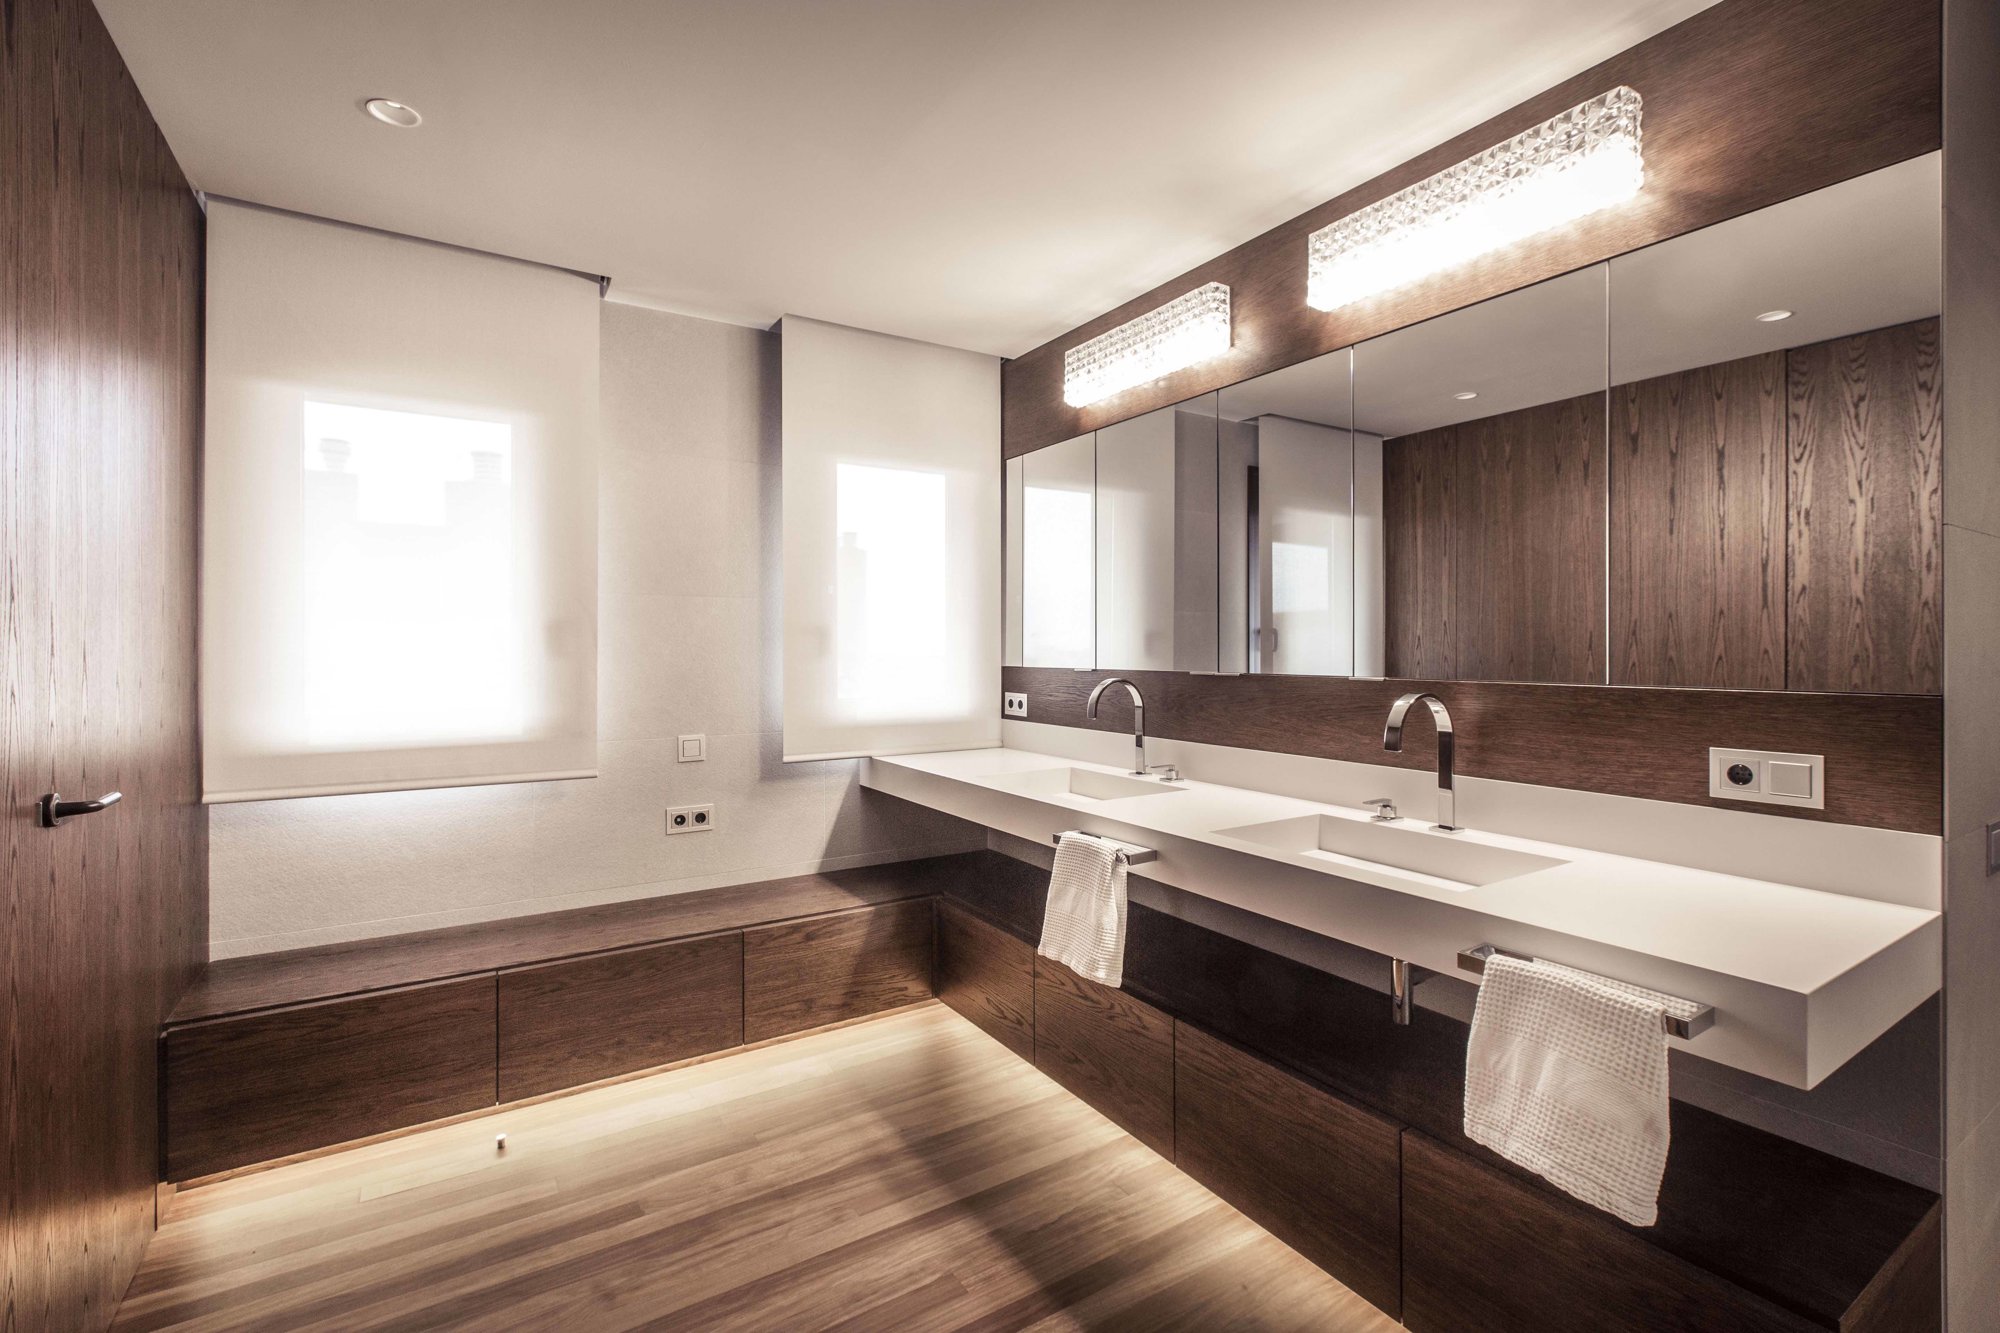 DESPUÉS: Amplio baño en blanco y madera